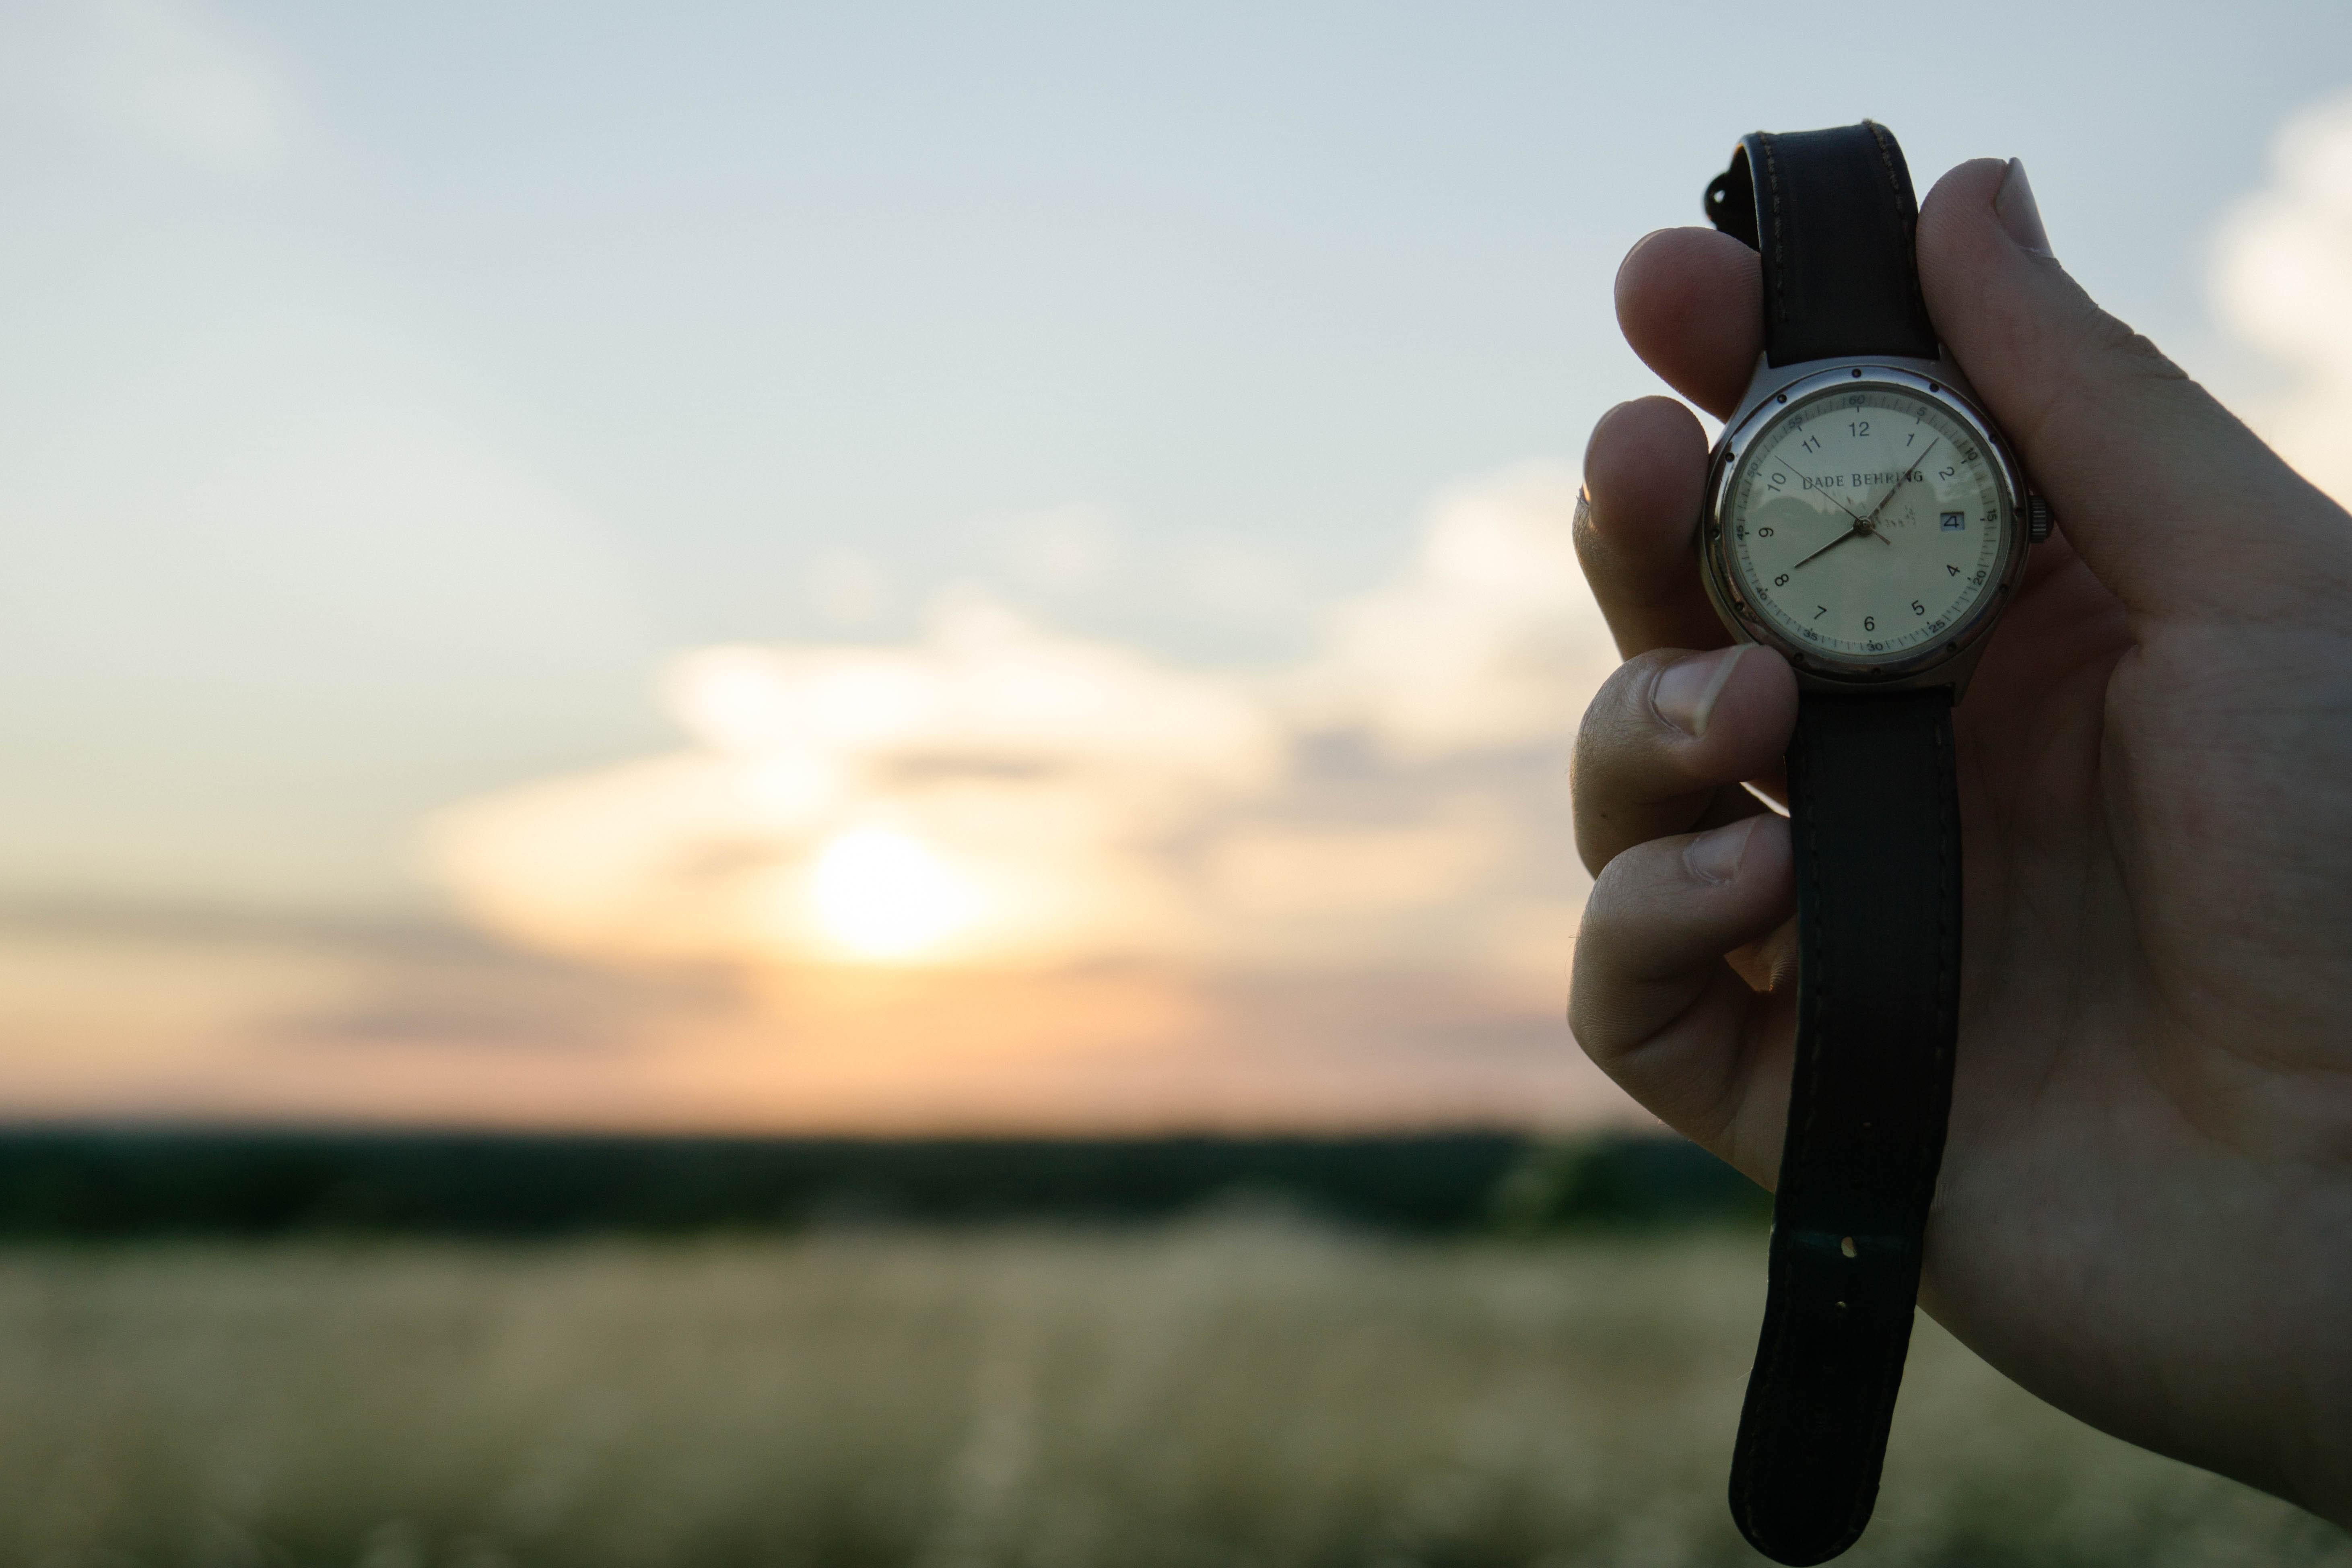 Mano sujetando un reloj de pulsera con correa de cuero con un paisaje de fondo. Foto de Wil Stewart en Unsplash